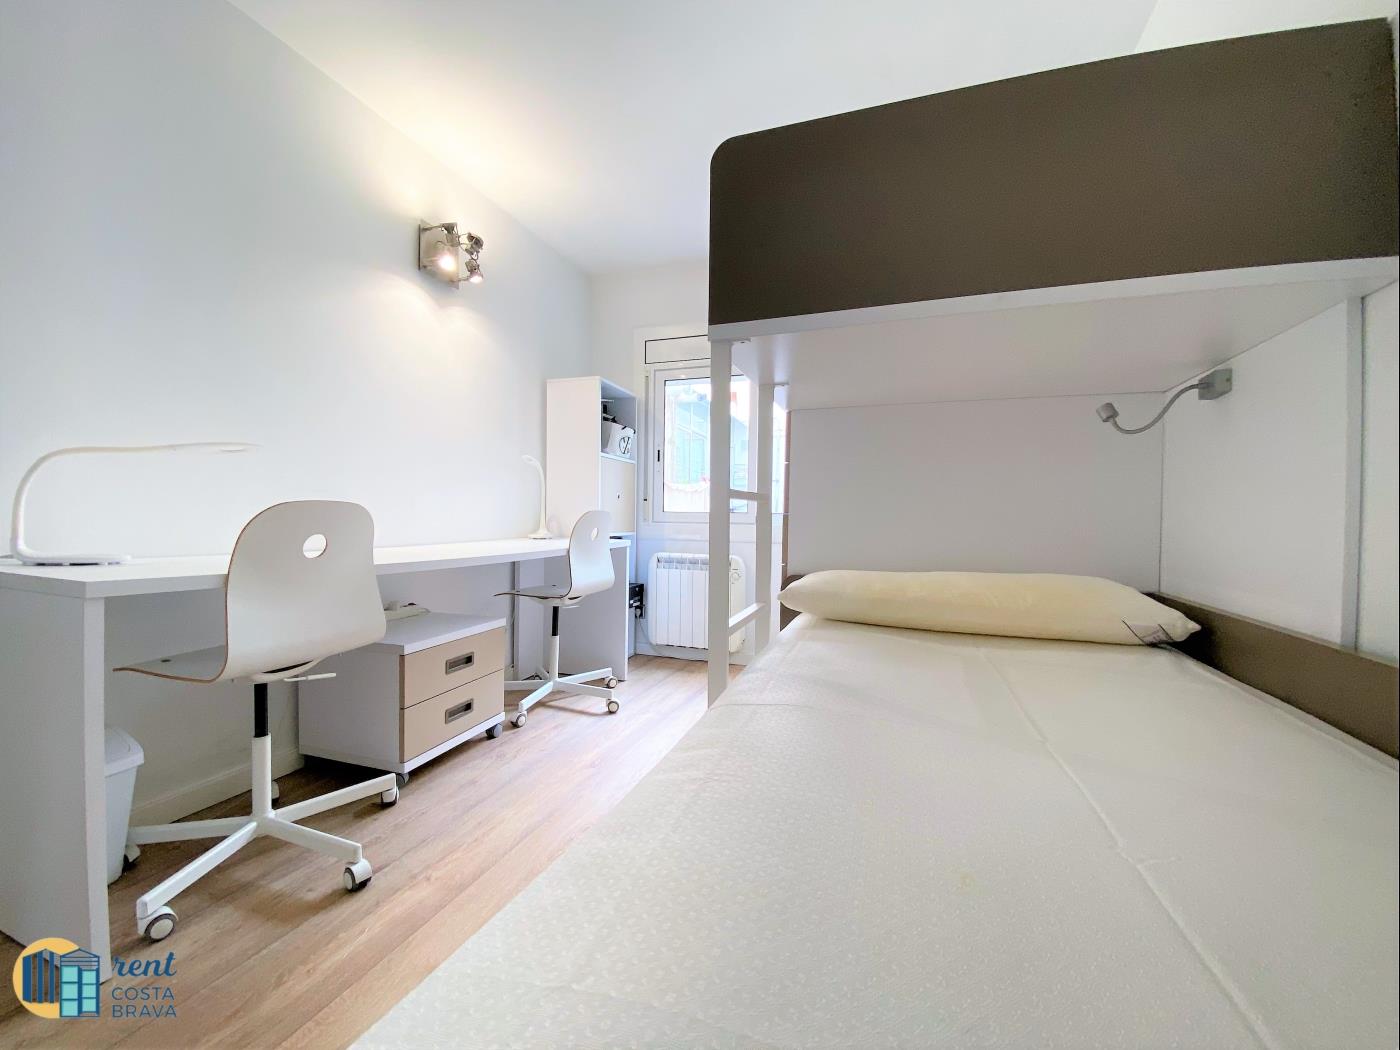 Appartement Bluedream in S'Agaró voor 5 personen met wifi, air En zwembad .en S'Agaró